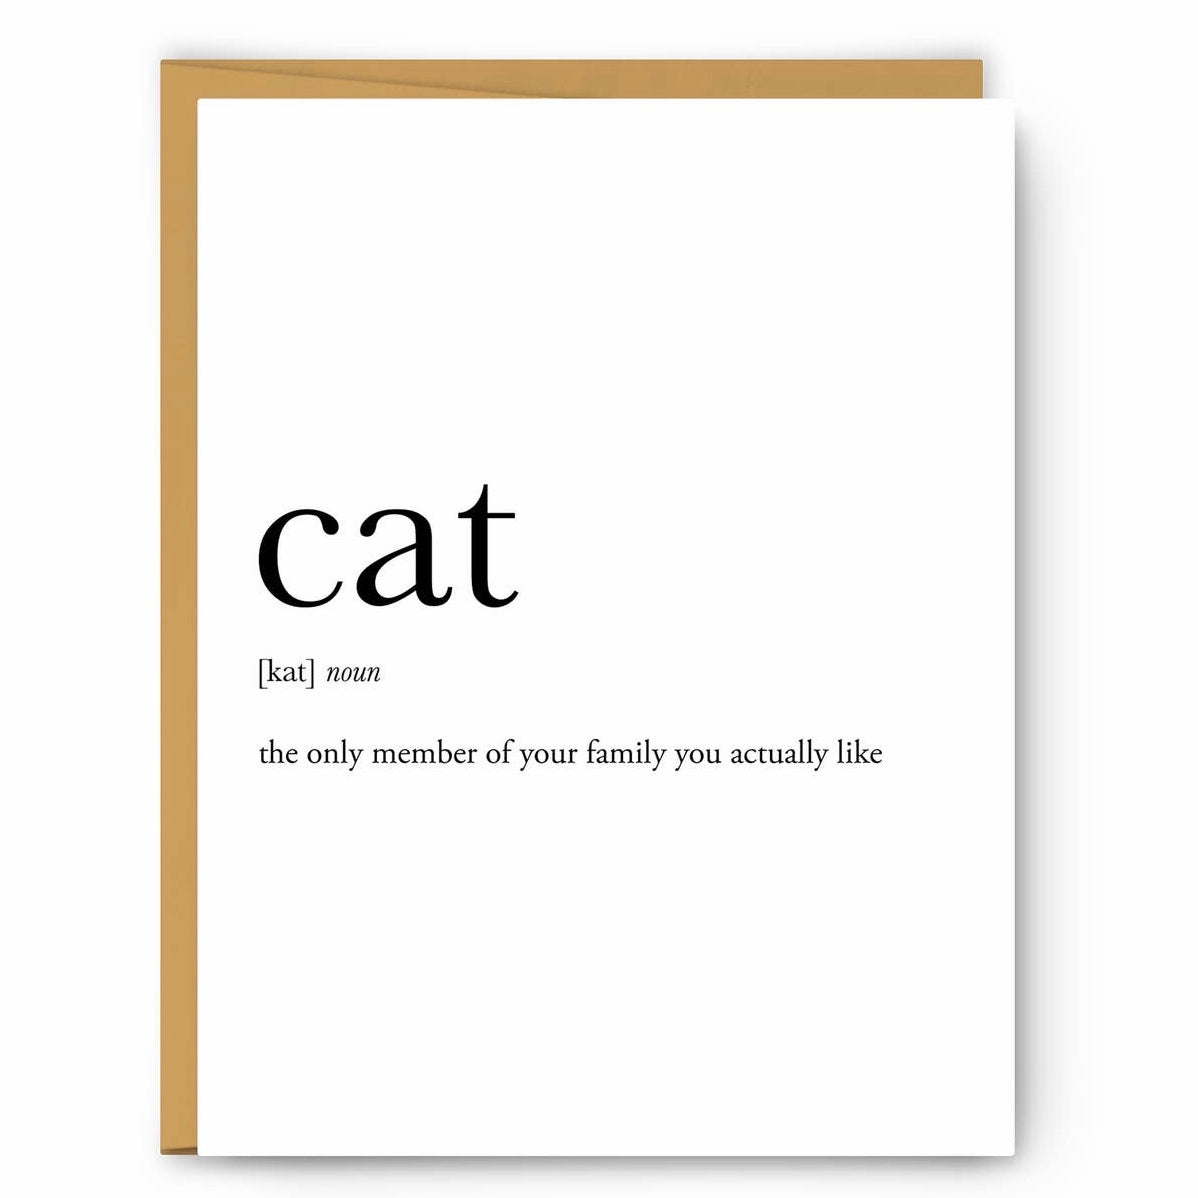 cat noun greeting card